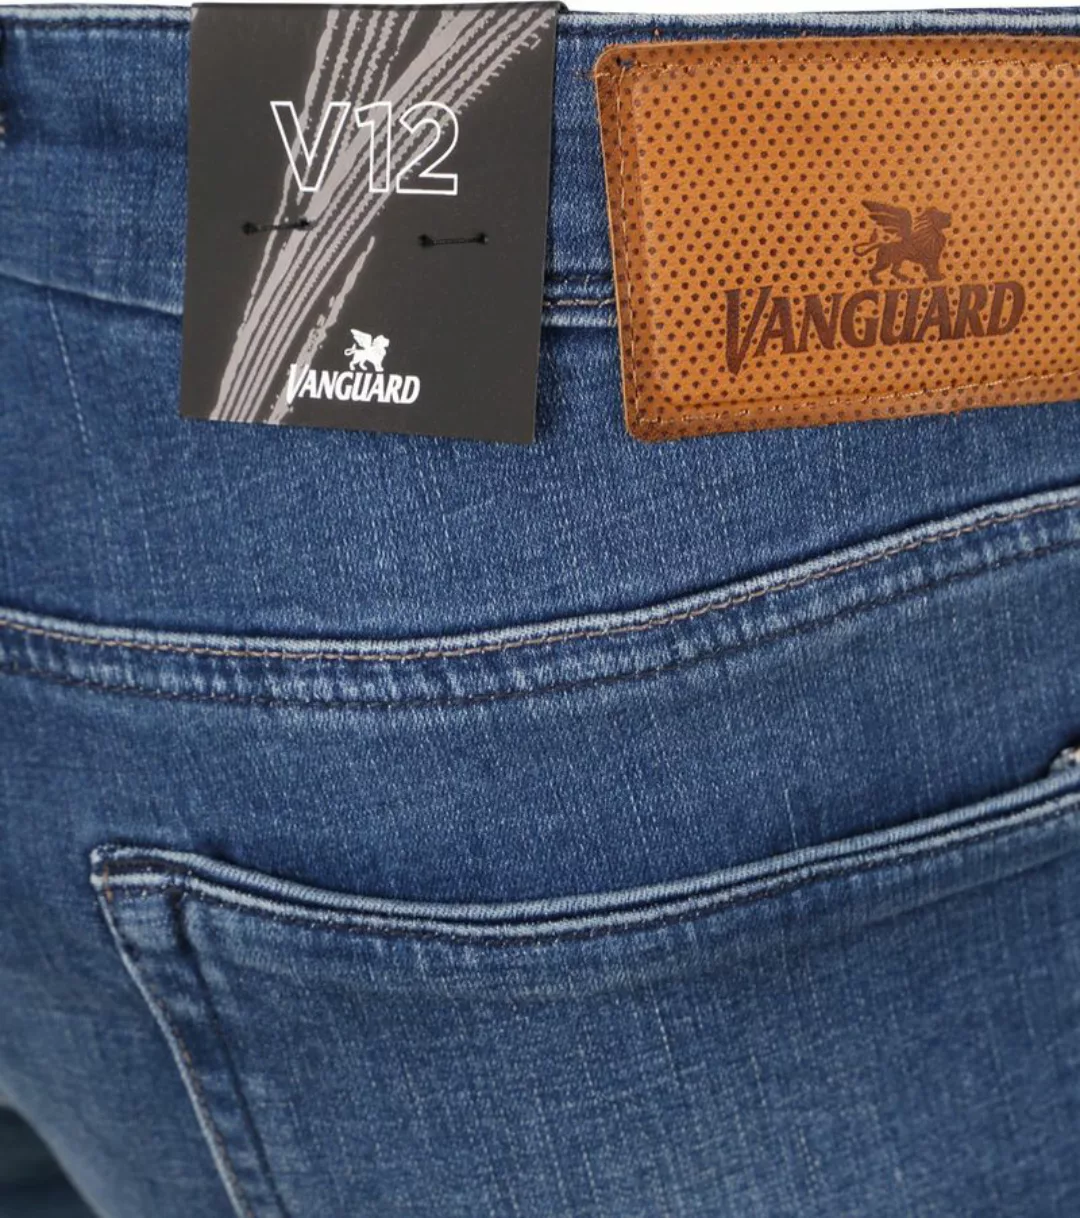 Vanguard Jeans V12 Rider Blau FIB - Größe W 35 - L 32 günstig online kaufen